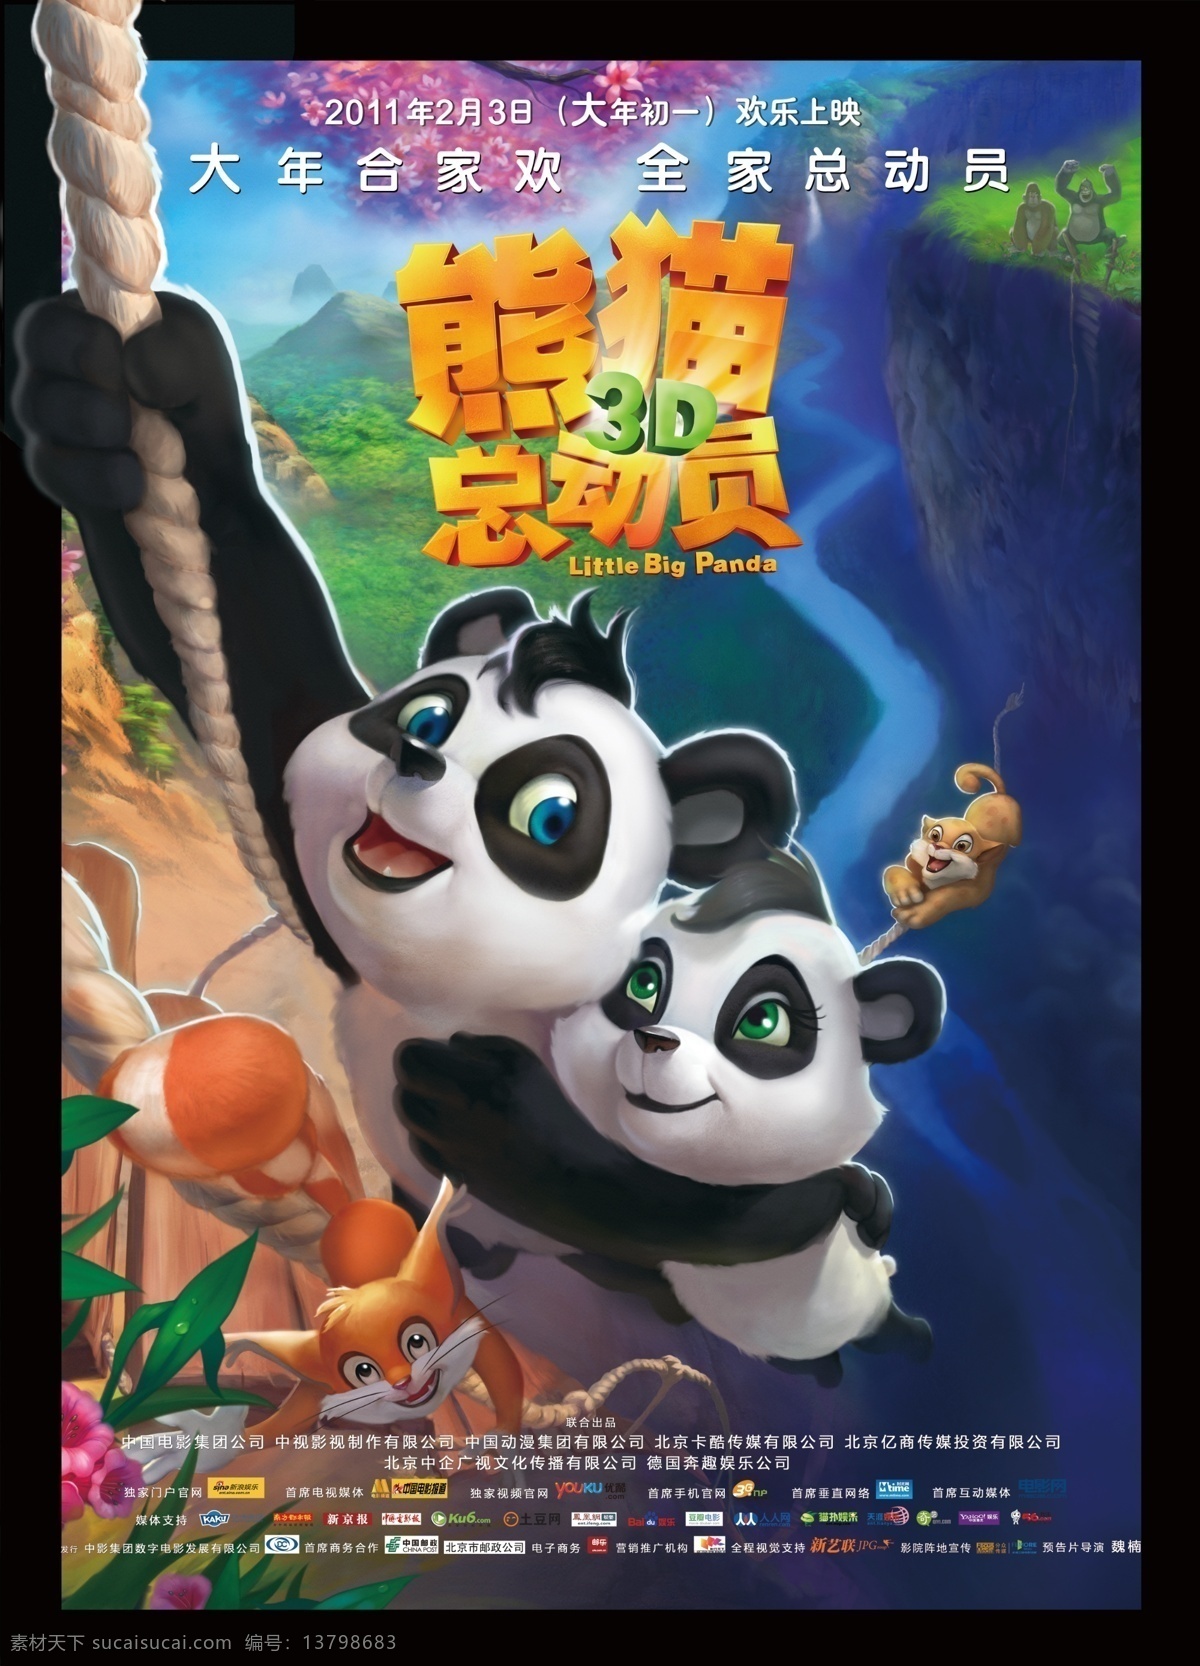 熊猫总动员 电影海报 3d 熊猫 功夫子 猩猩 电影 海报 艺术字 影片 广告设计模板 源文件